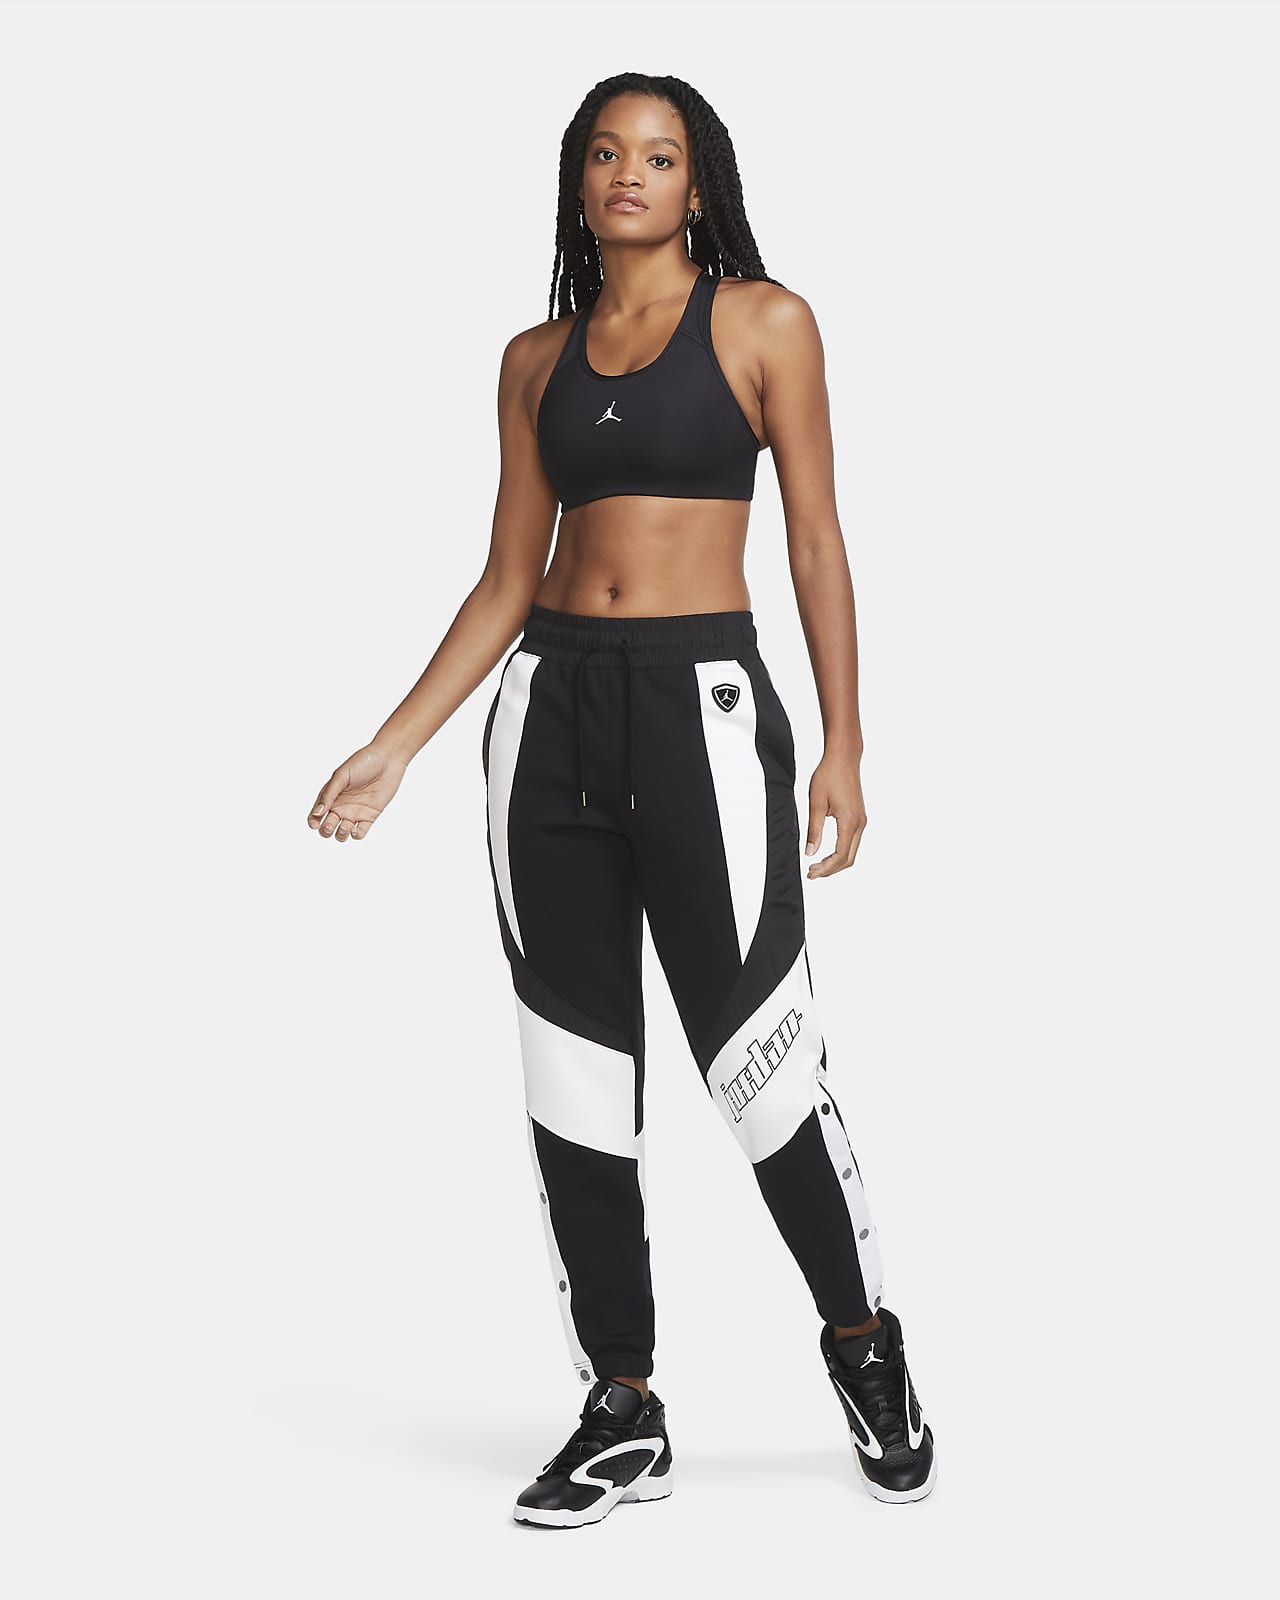 Nike Women's Dri-FIT Medium-Support 1-Piece Pad Swoosh Sports Bra